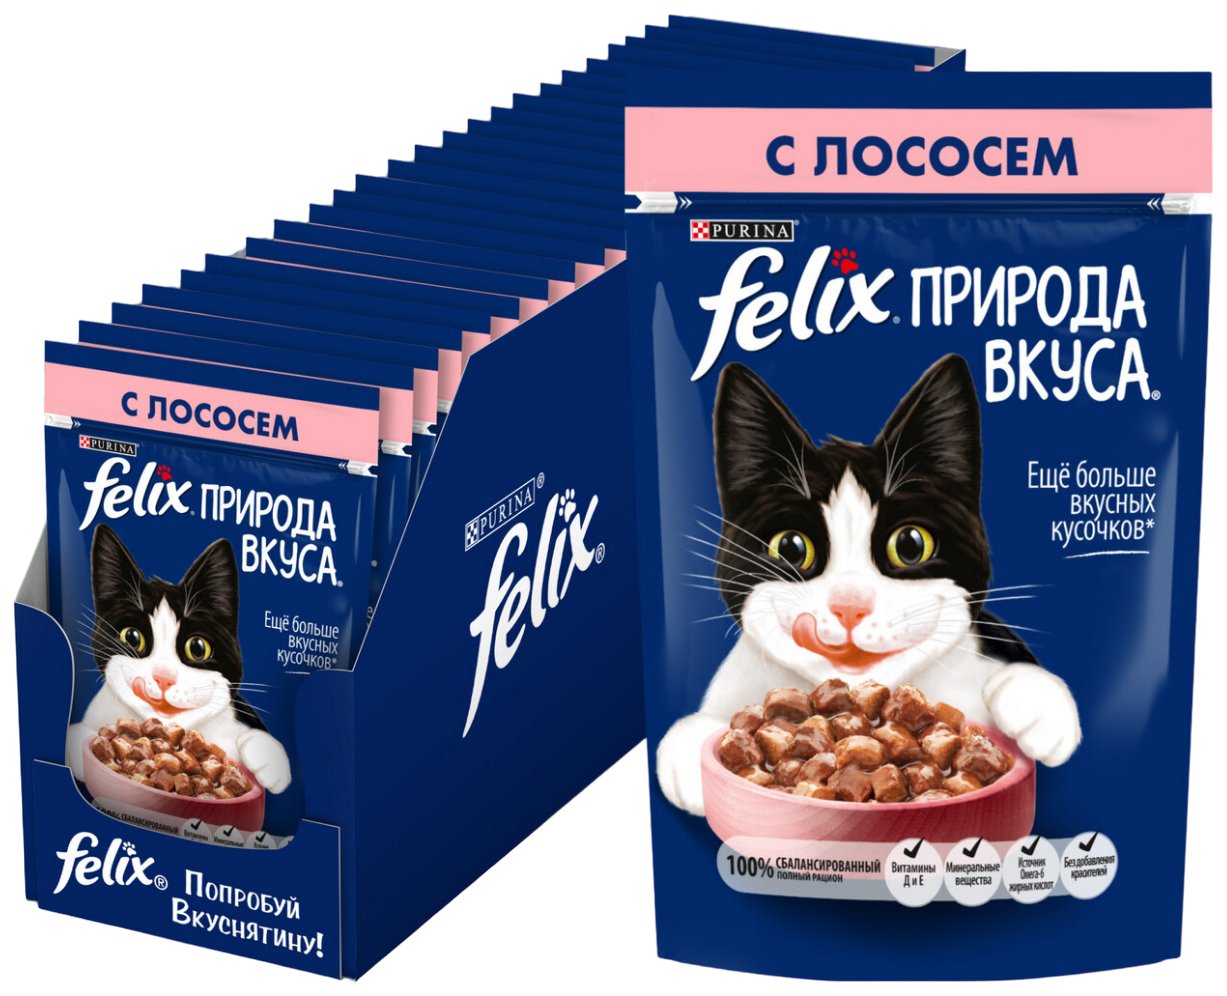 Купить влажный корм для кошек FELIX Природа вкуса, с лососем в соусе, 26 шт по 75 г, цены на Мегамаркет | Артикул: 100044112333